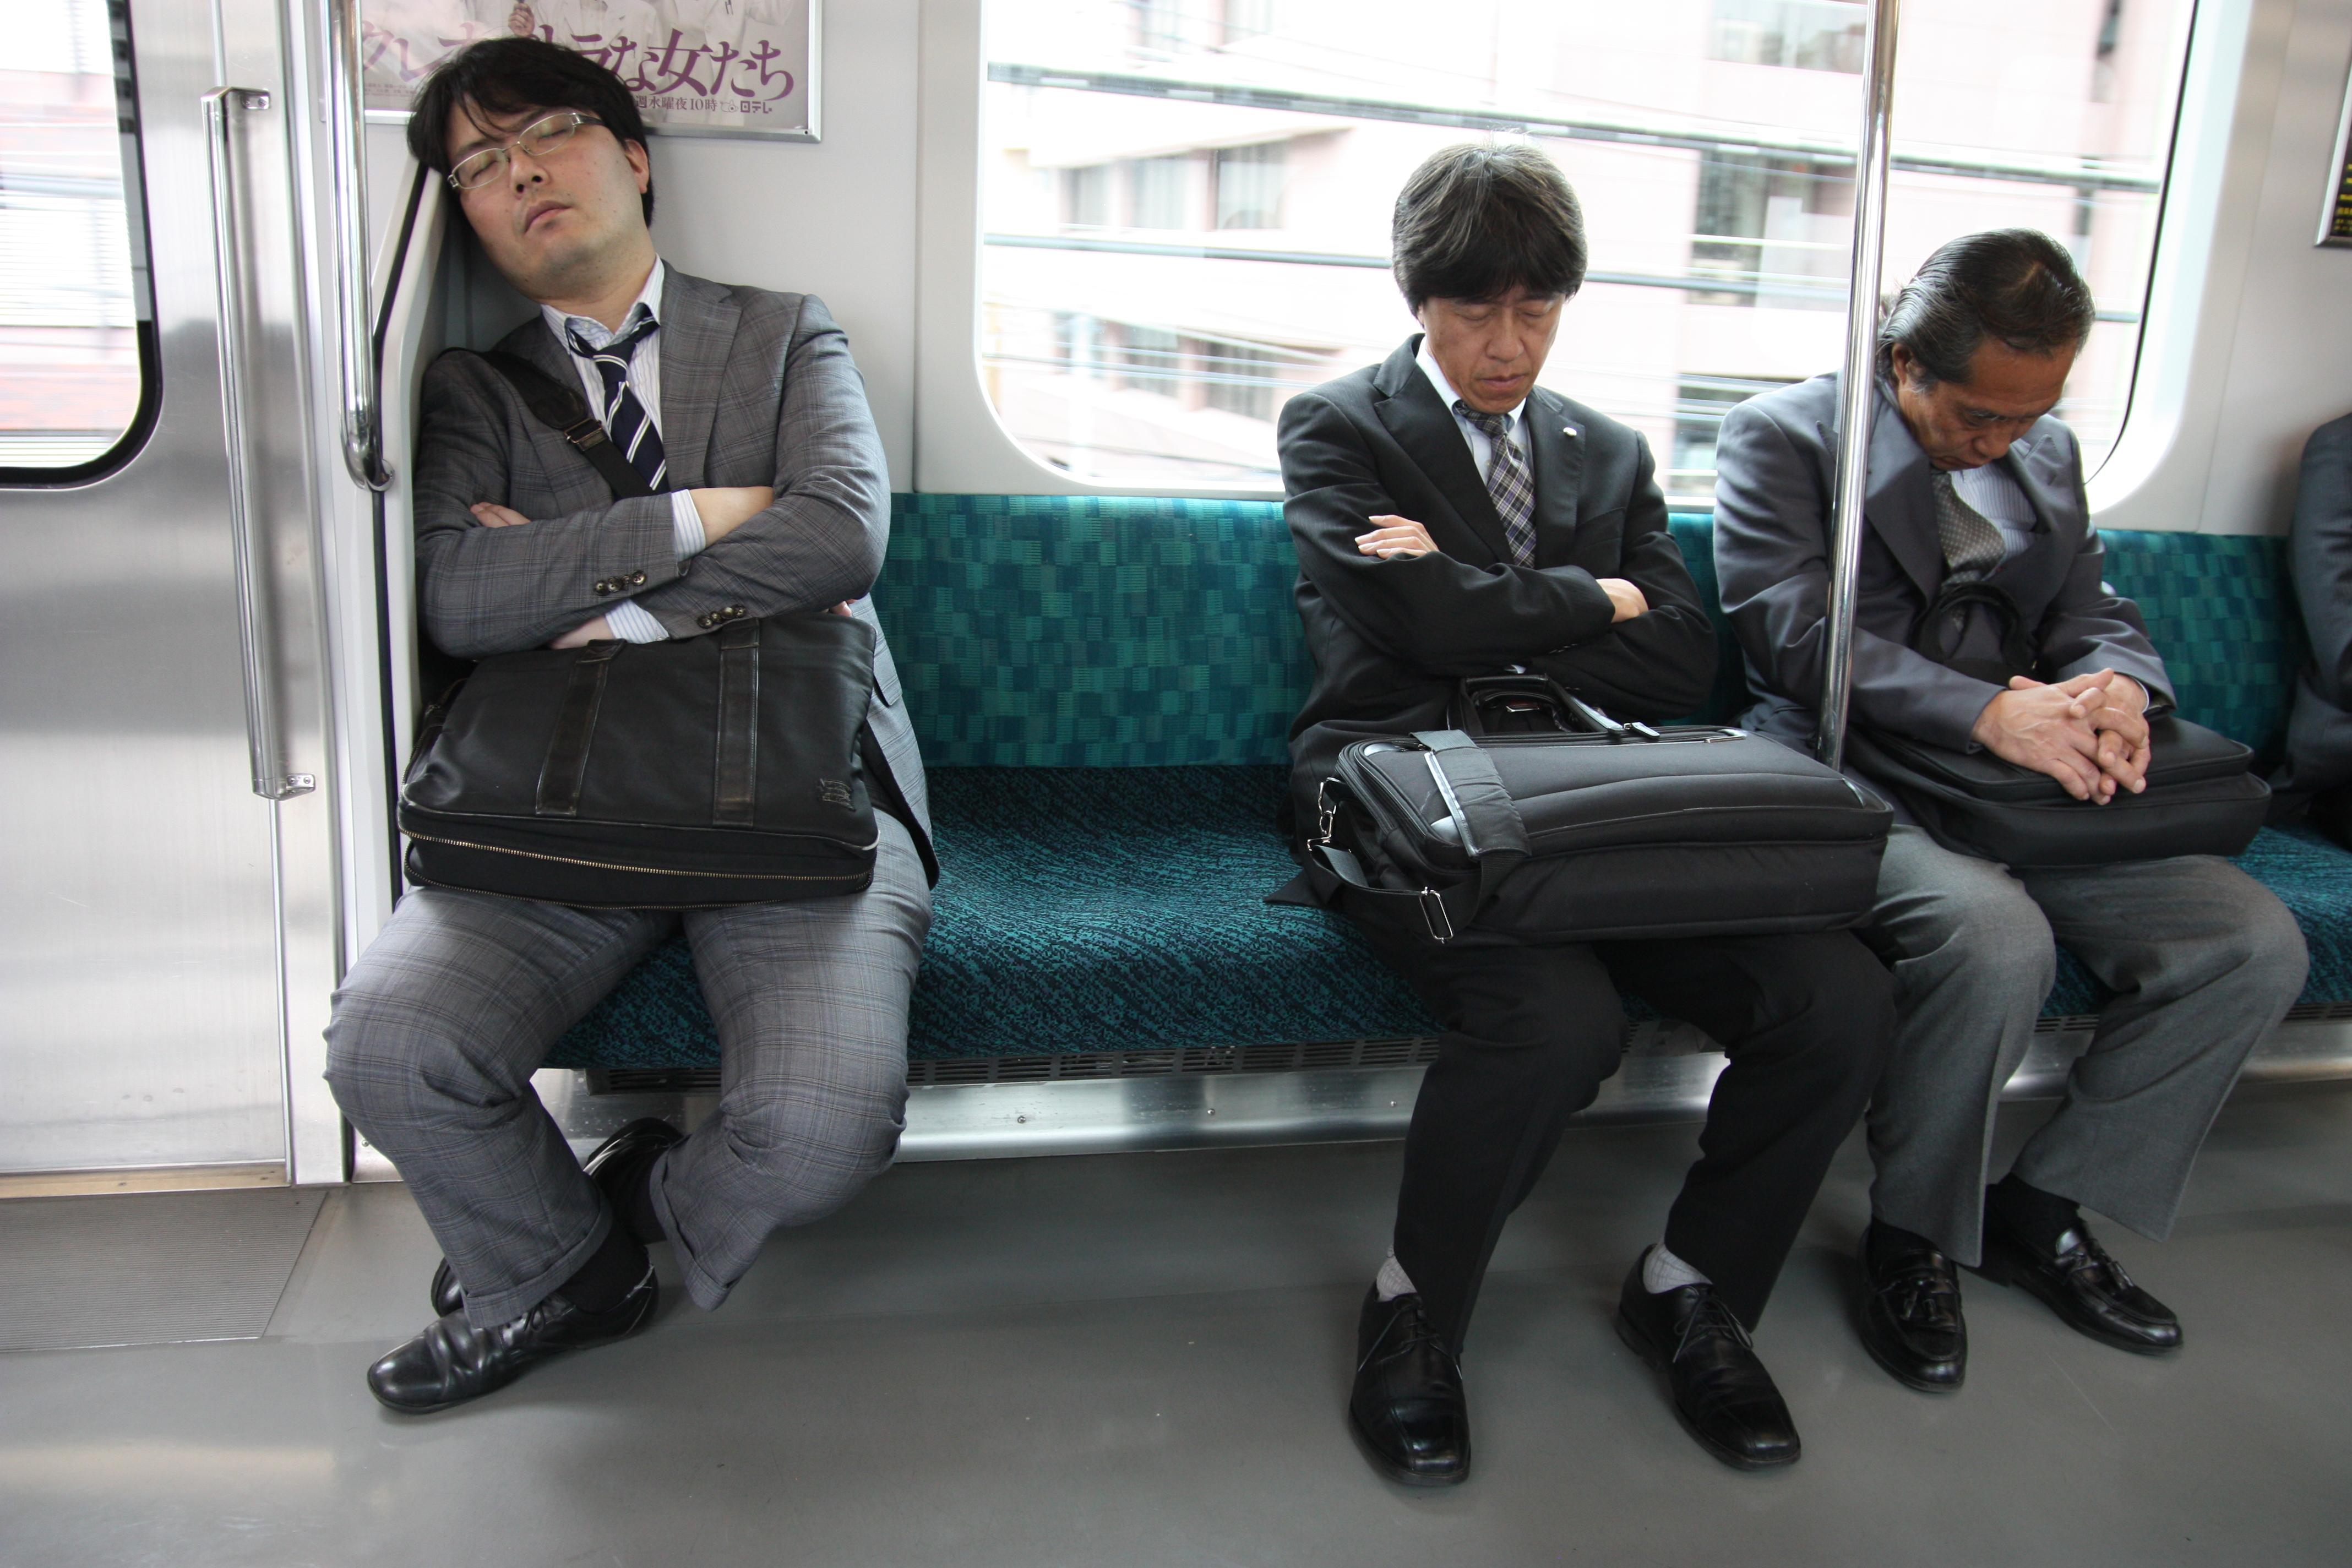 Tokyo Train Girls Dvdrip 3